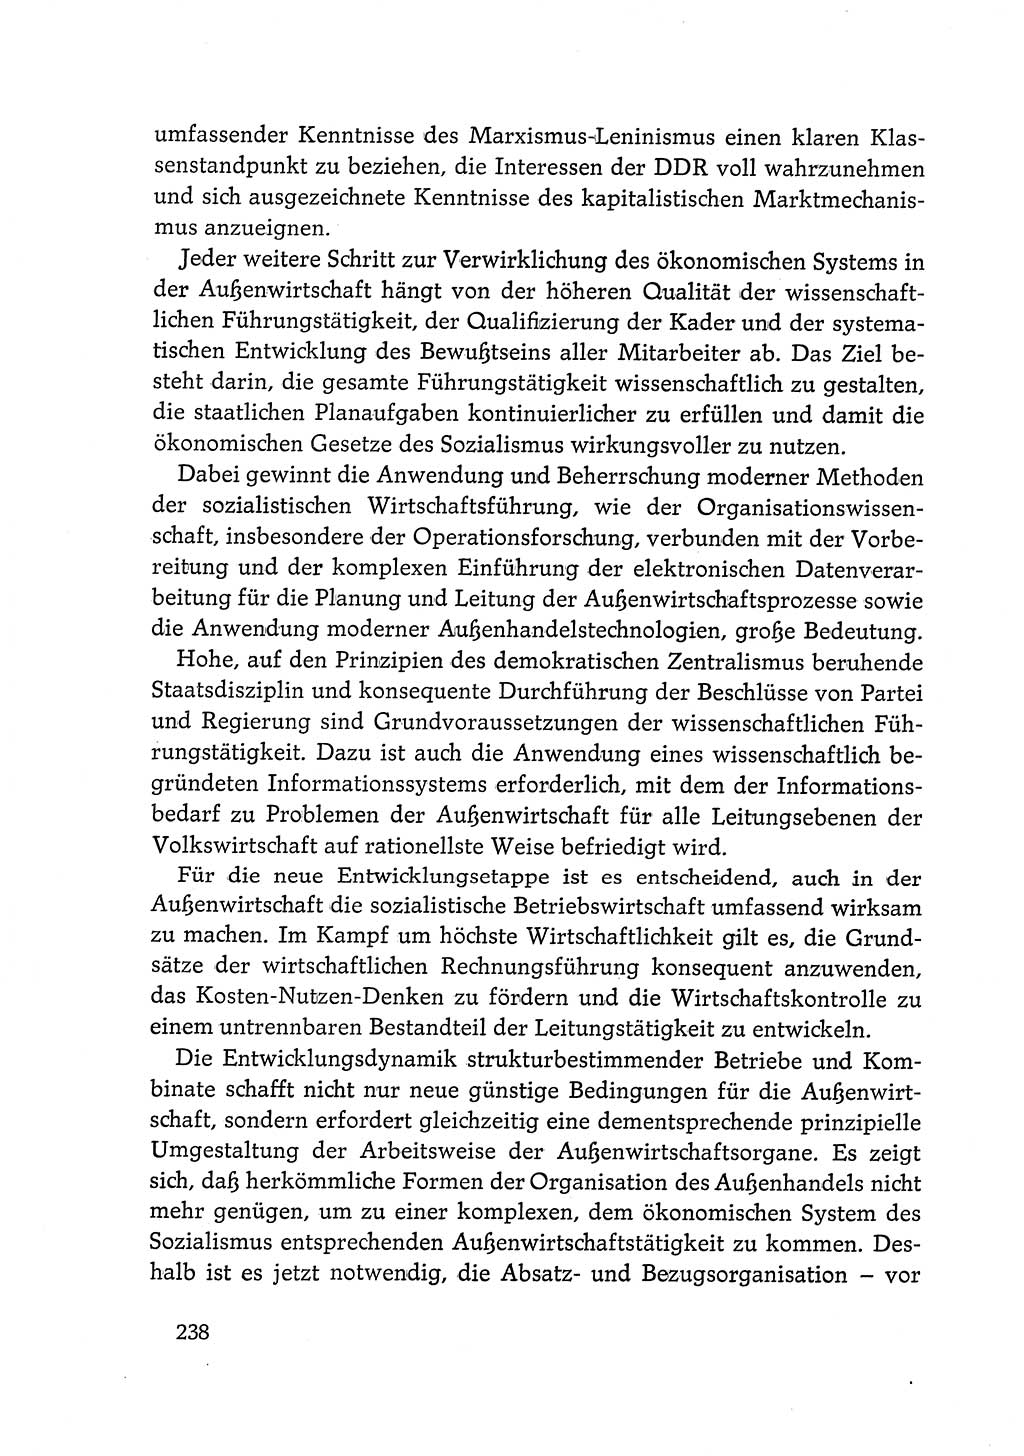 Dokumente der Sozialistischen Einheitspartei Deutschlands (SED) [Deutsche Demokratische Republik (DDR)] 1968-1969, Seite 238 (Dok. SED DDR 1968-1969, S. 238)